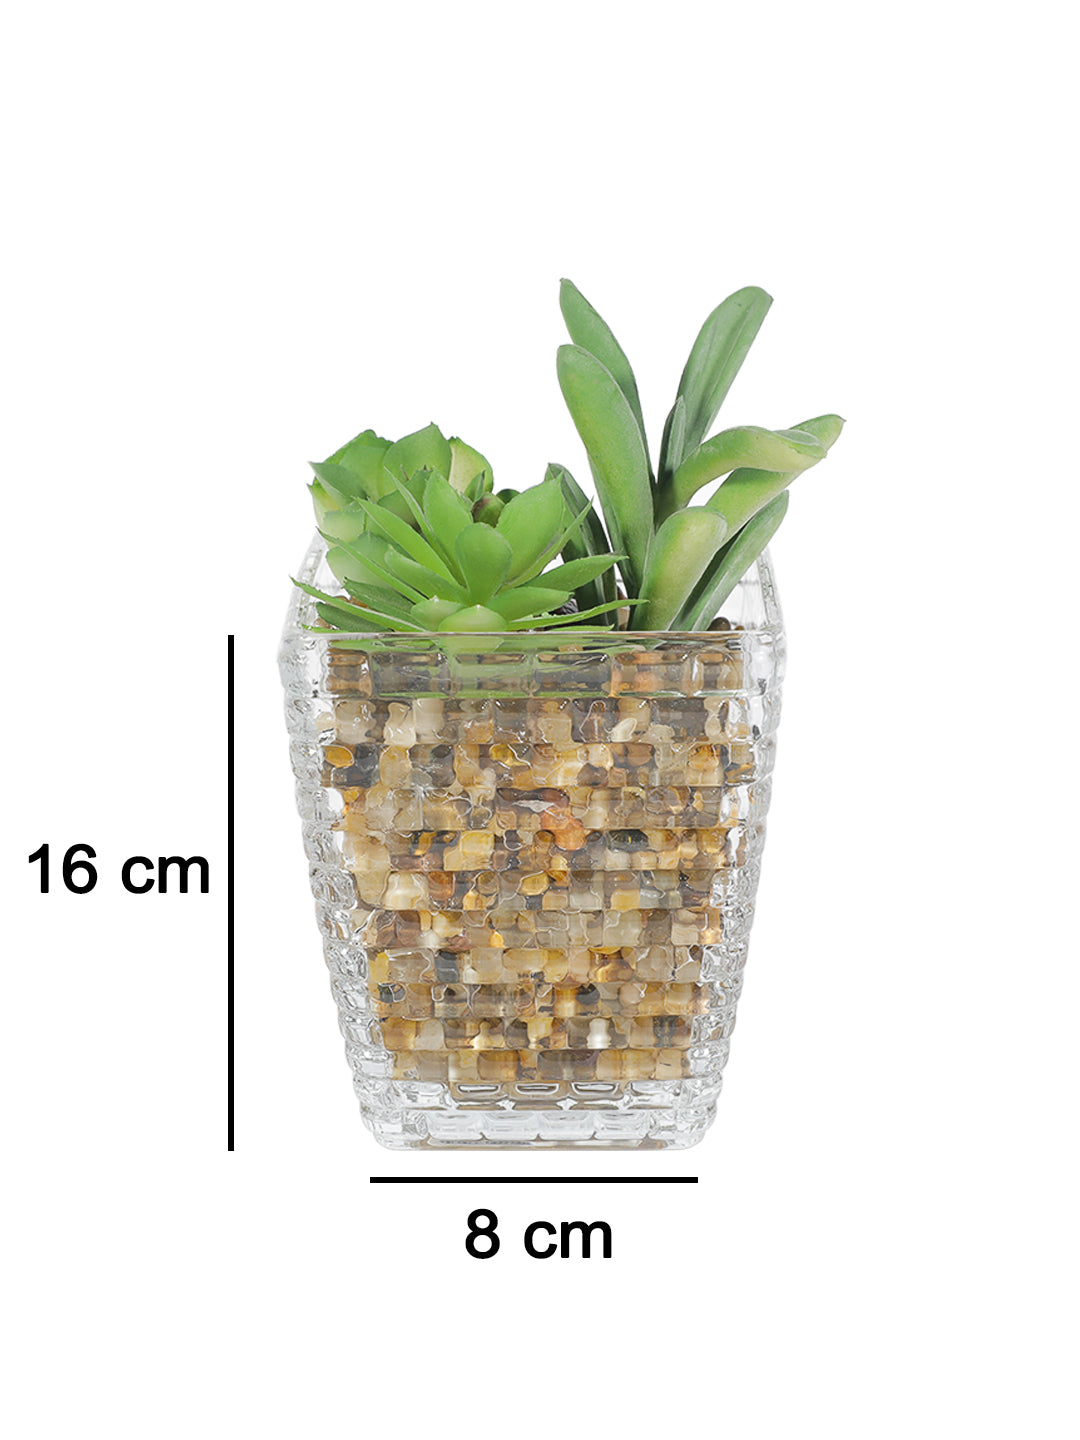 VON CASA Fake Mini Succulent Plant